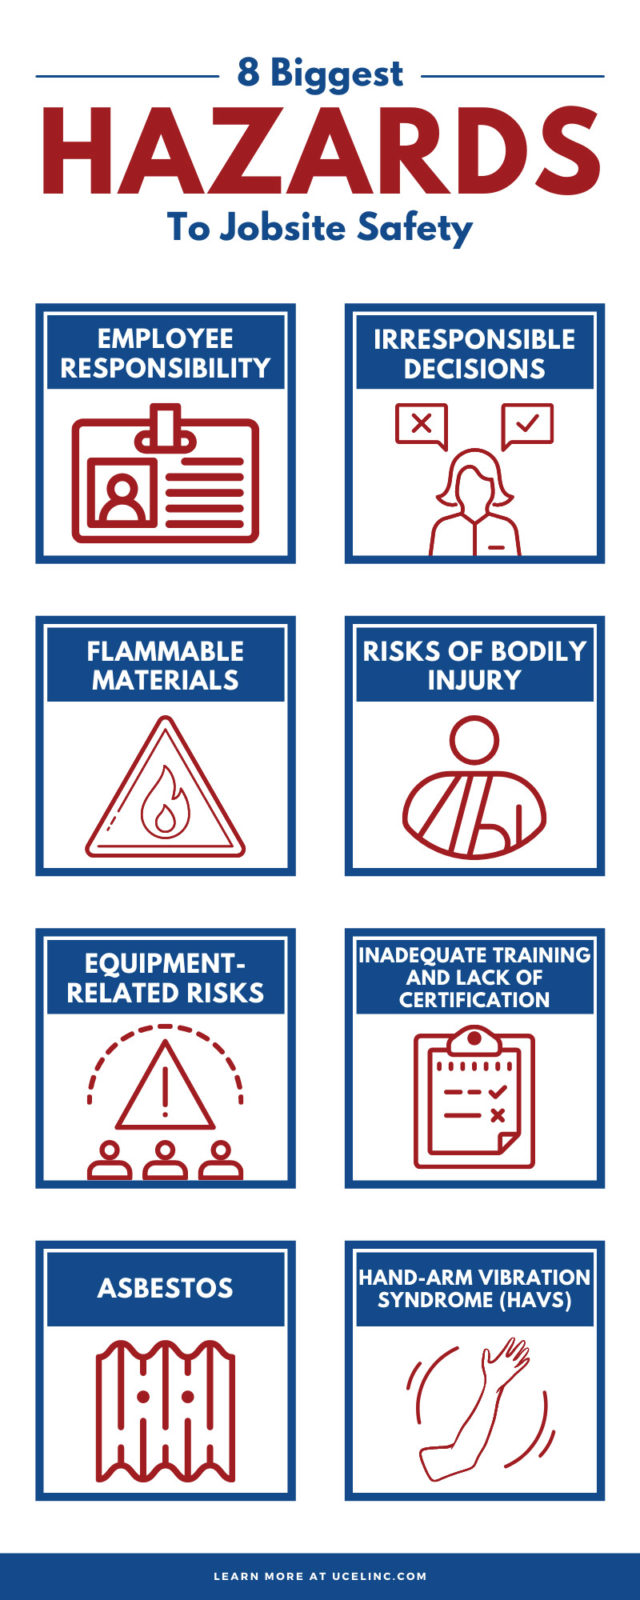 8 Biggest Hazards To Jobsite Safety